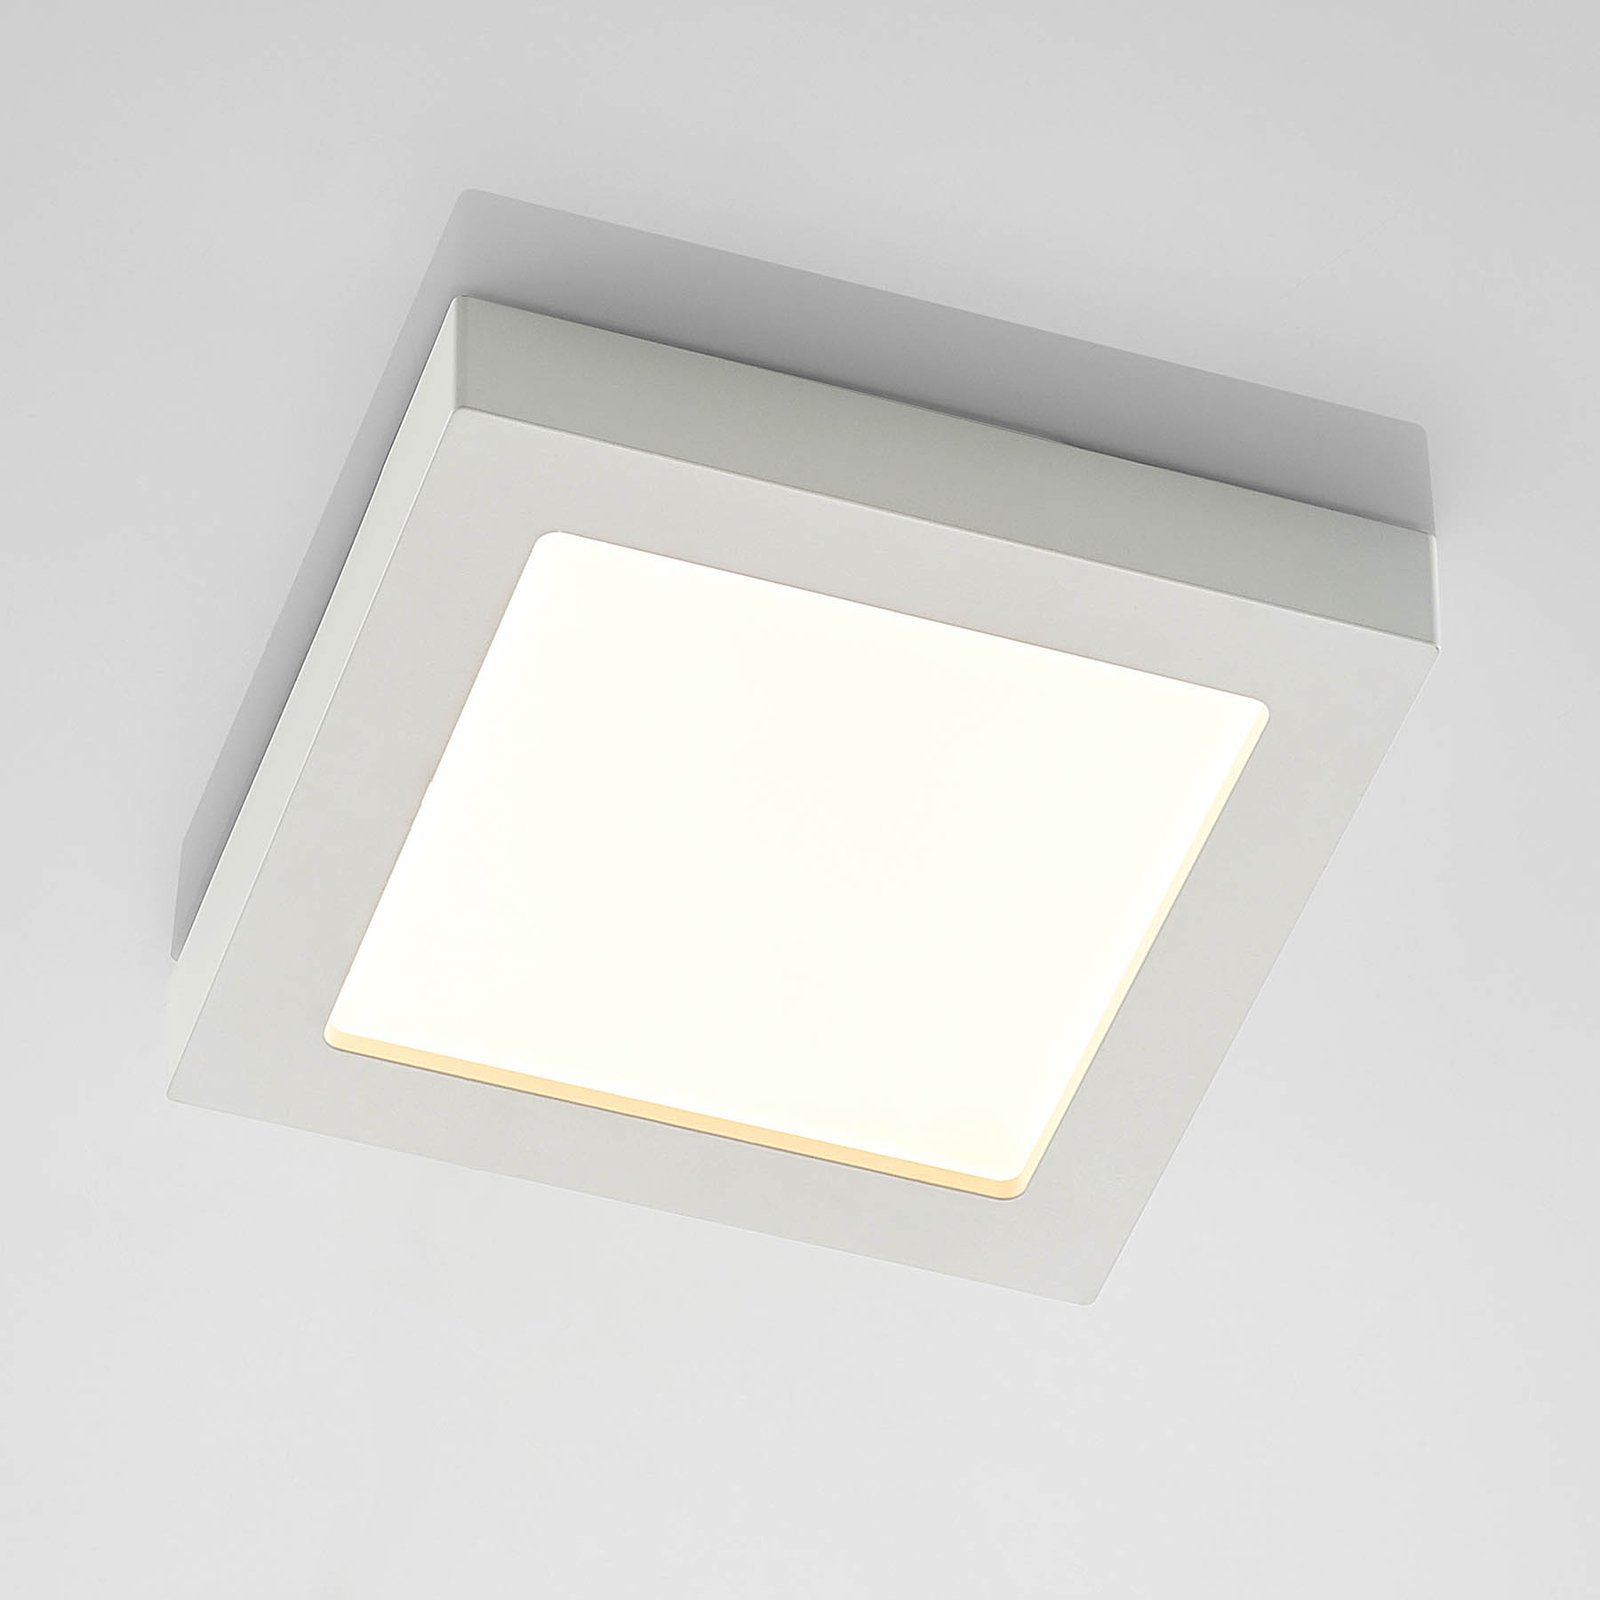 Prios Alette LED stropní světlo, bílé, 22,7cm, 18W